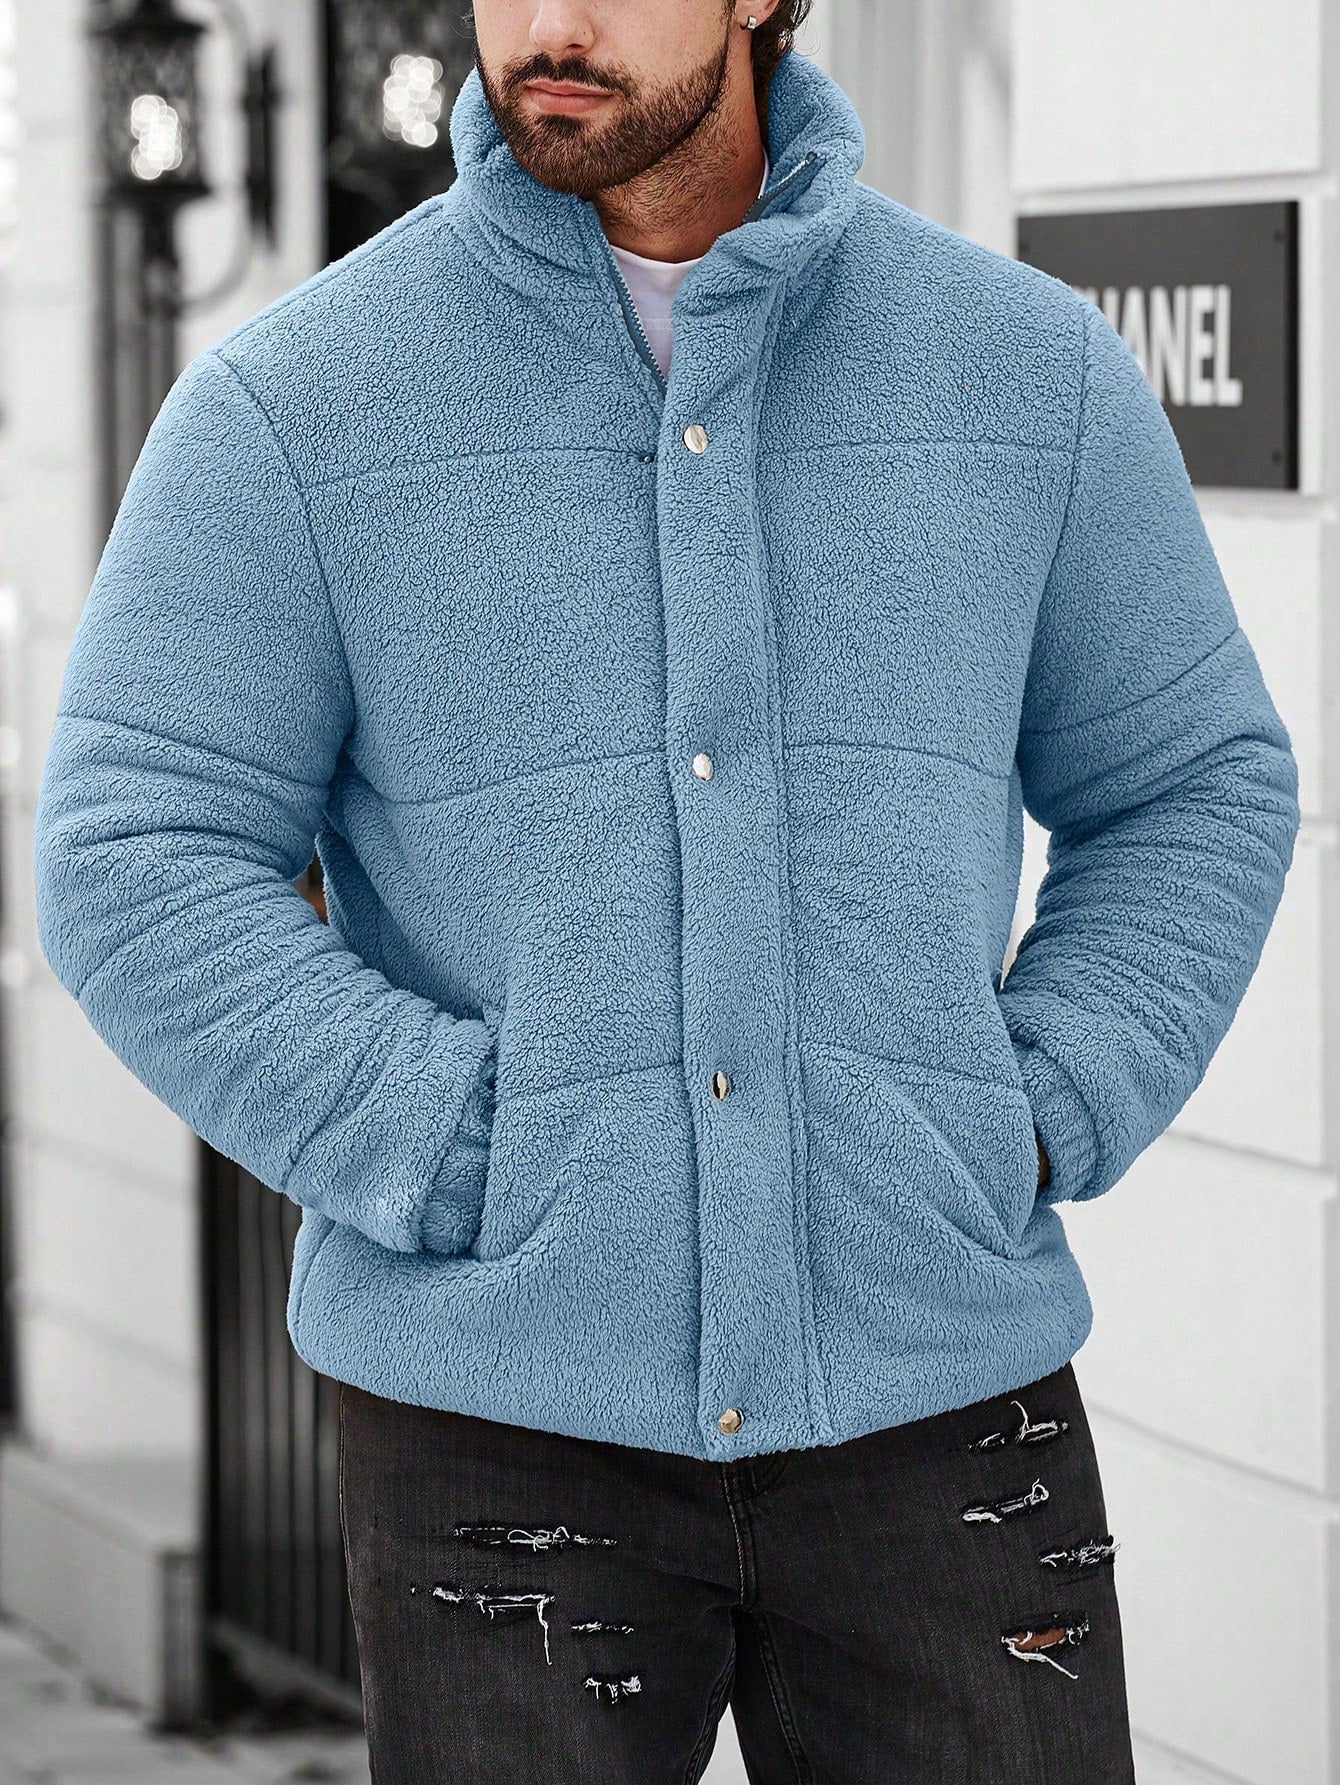 Nextthink Men's Solid Color Plush Winter Coat - NextthinkShopsm2311206296436978